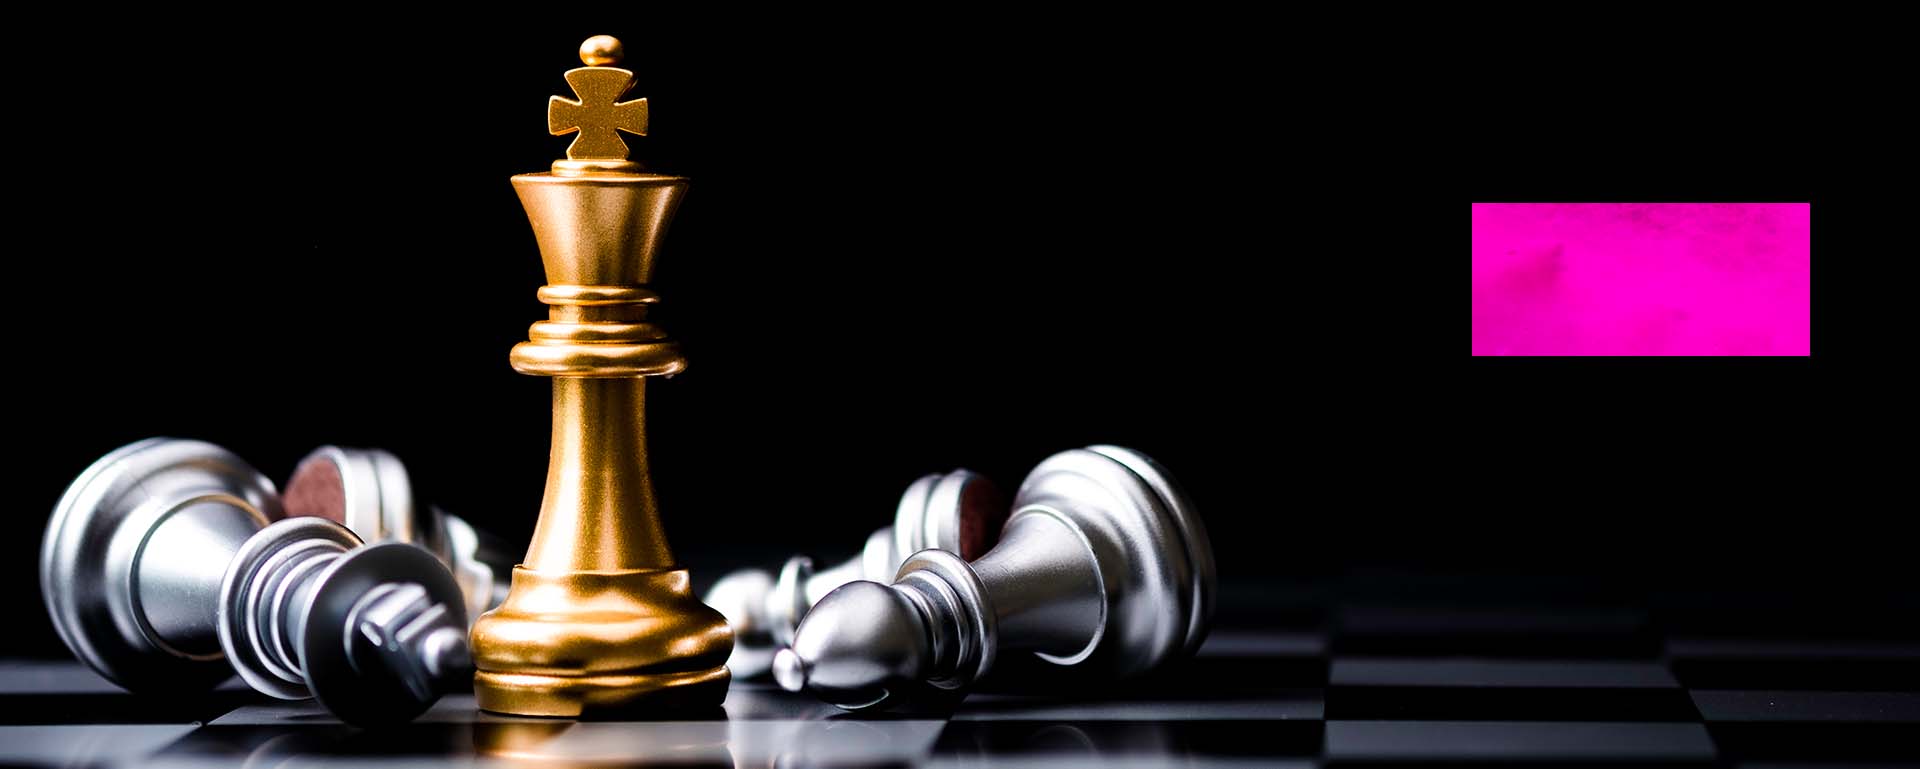 Pēc četru gadu pārtraukuma notiks 44. šaha olimpiāde